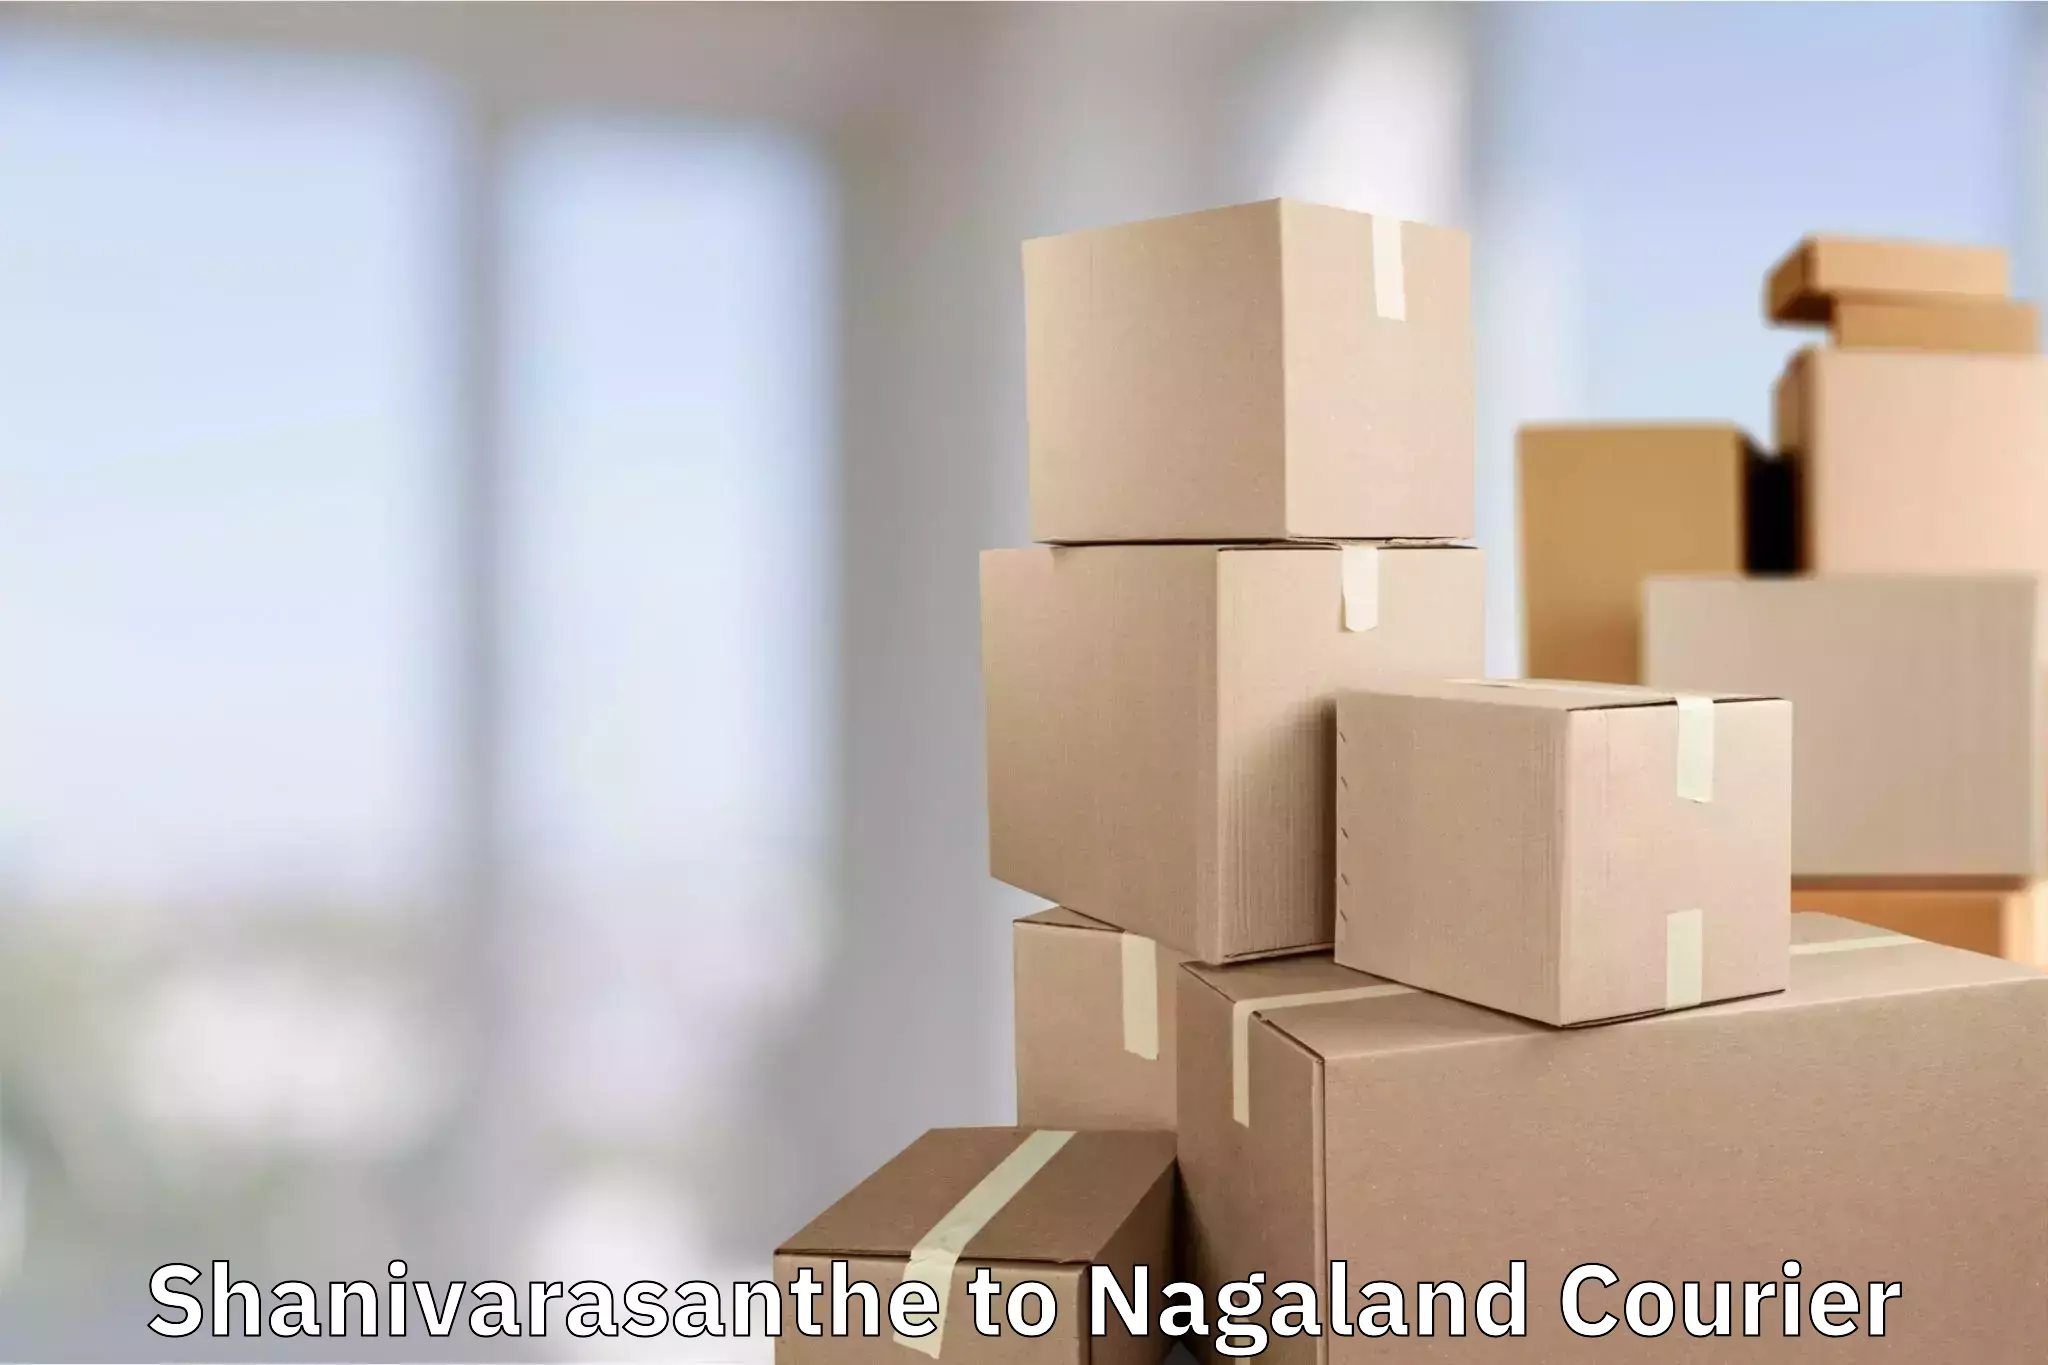 Luggage transport consultancy Shanivarasanthe to NIT Nagaland